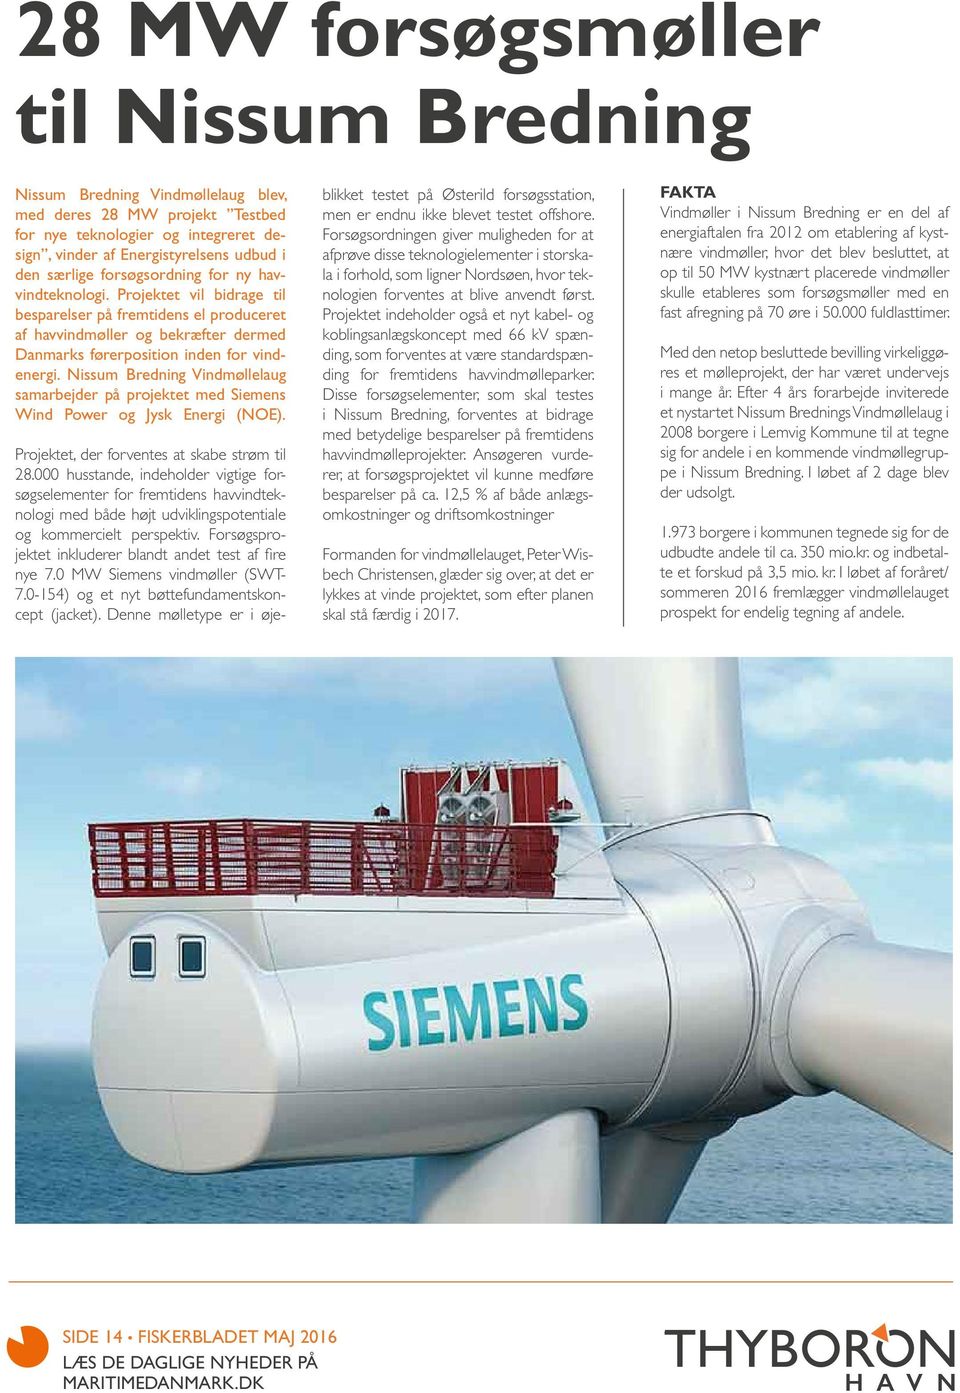 Nissum Bredning Vindmøllelaug samarbejder på projektet med Siemens Wind Power og Jysk Energi (NOE). Projektet, der forventes at skabe strøm til 28.